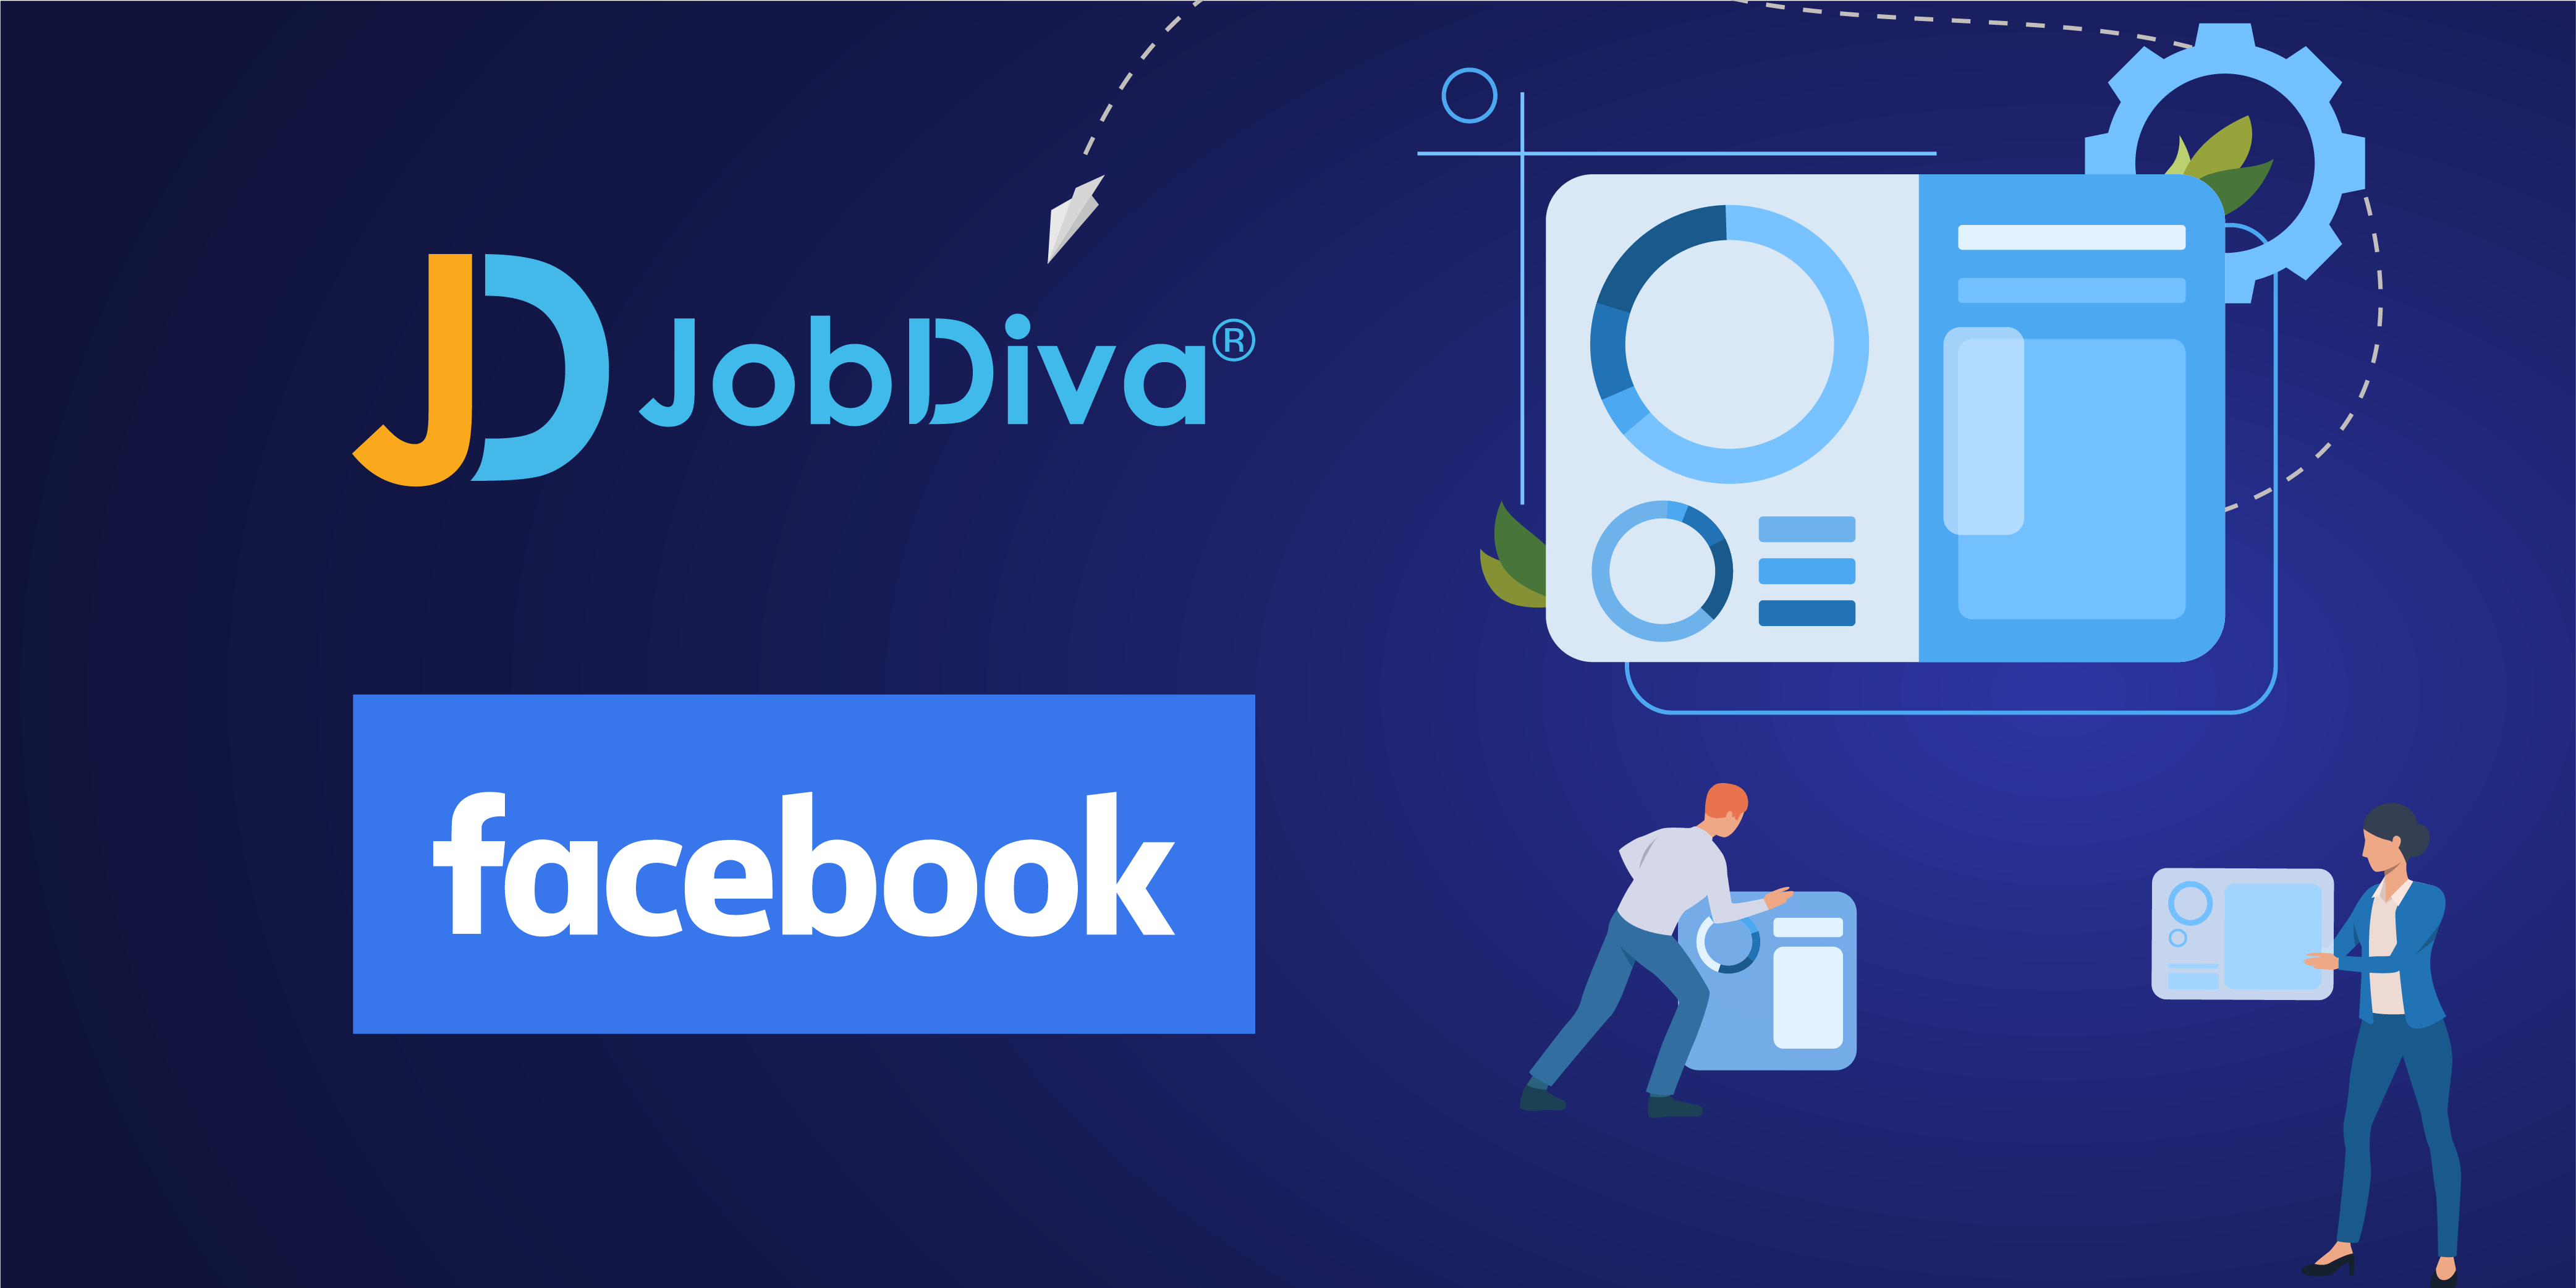 JobDiva s'intègre à la fonction Offres d'emploi de Facebook